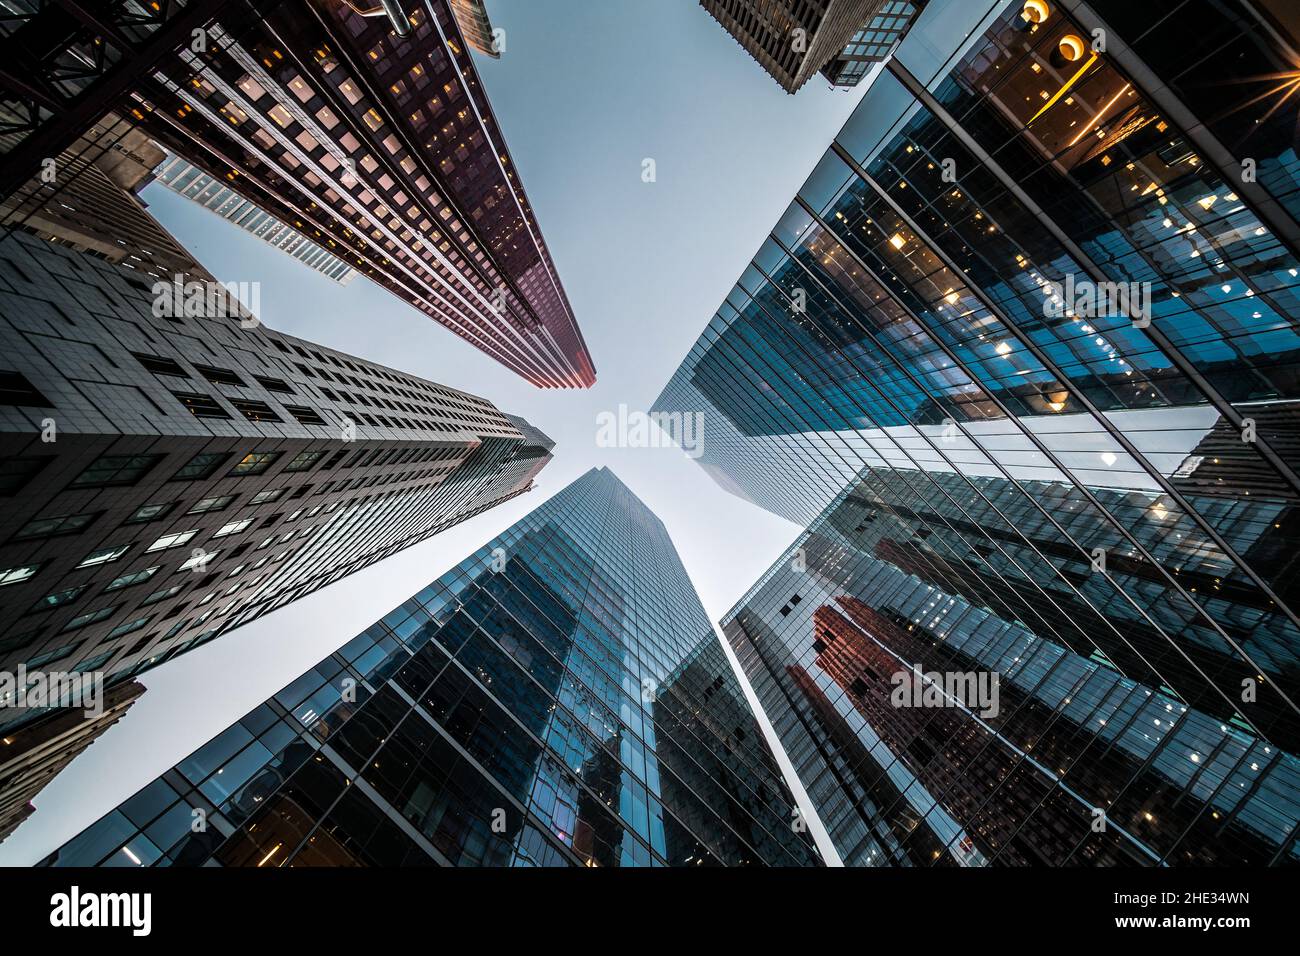 Business and Finance concept, en regardant l'architecture de bâtiment de bureau en hauteur dans le quartier financier d'une métropole moderne. Banque D'Images